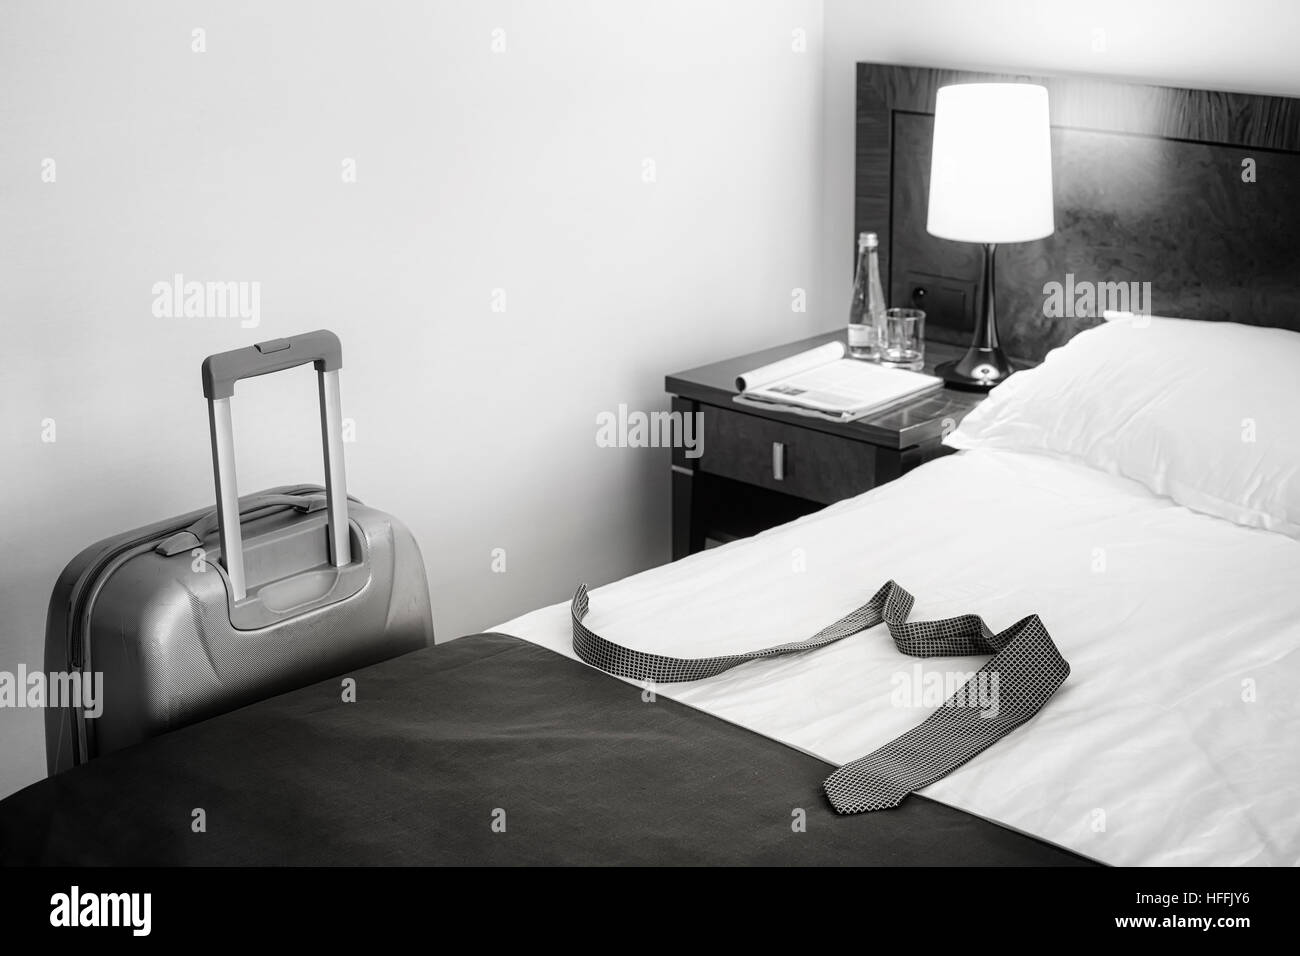 Schwarz / weiß Bild eines Unentschiedens auf Bett und Koffer in leeren Hotelzimmer, Darstellung. Stockfoto